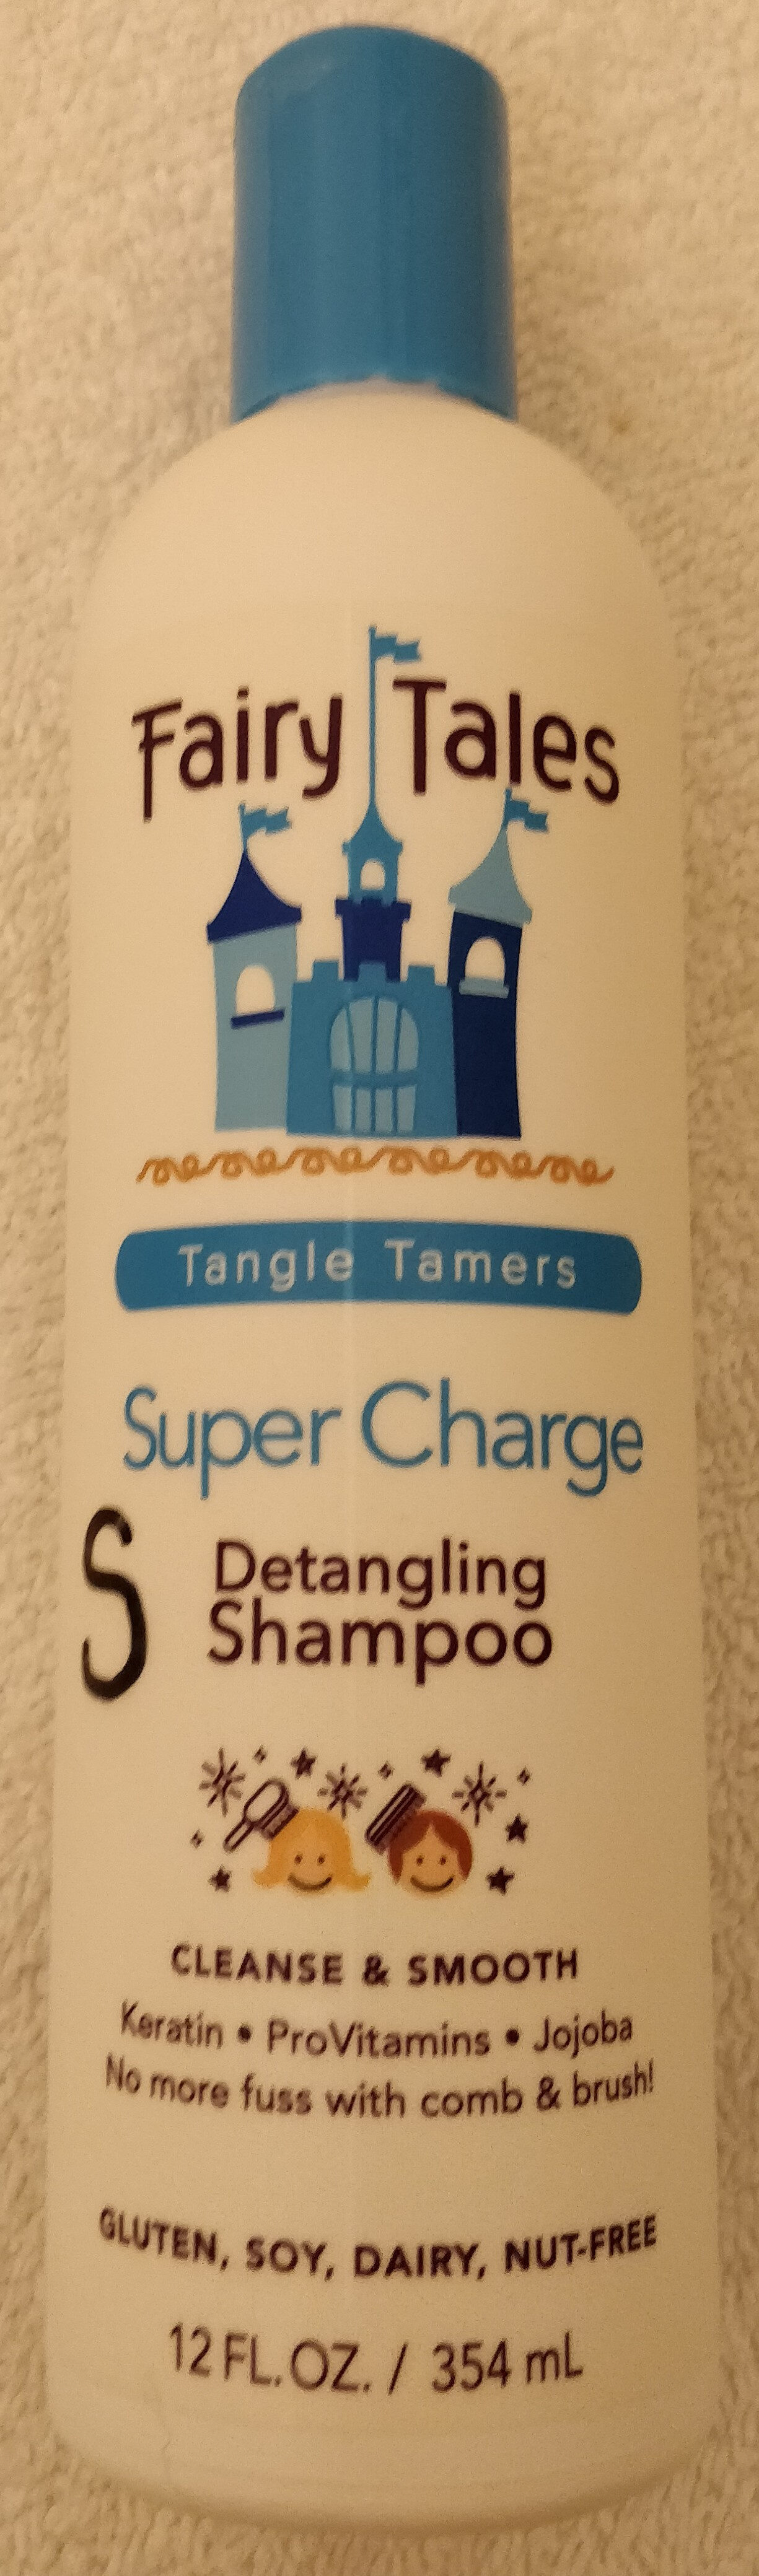 shampoo - Tuote - en